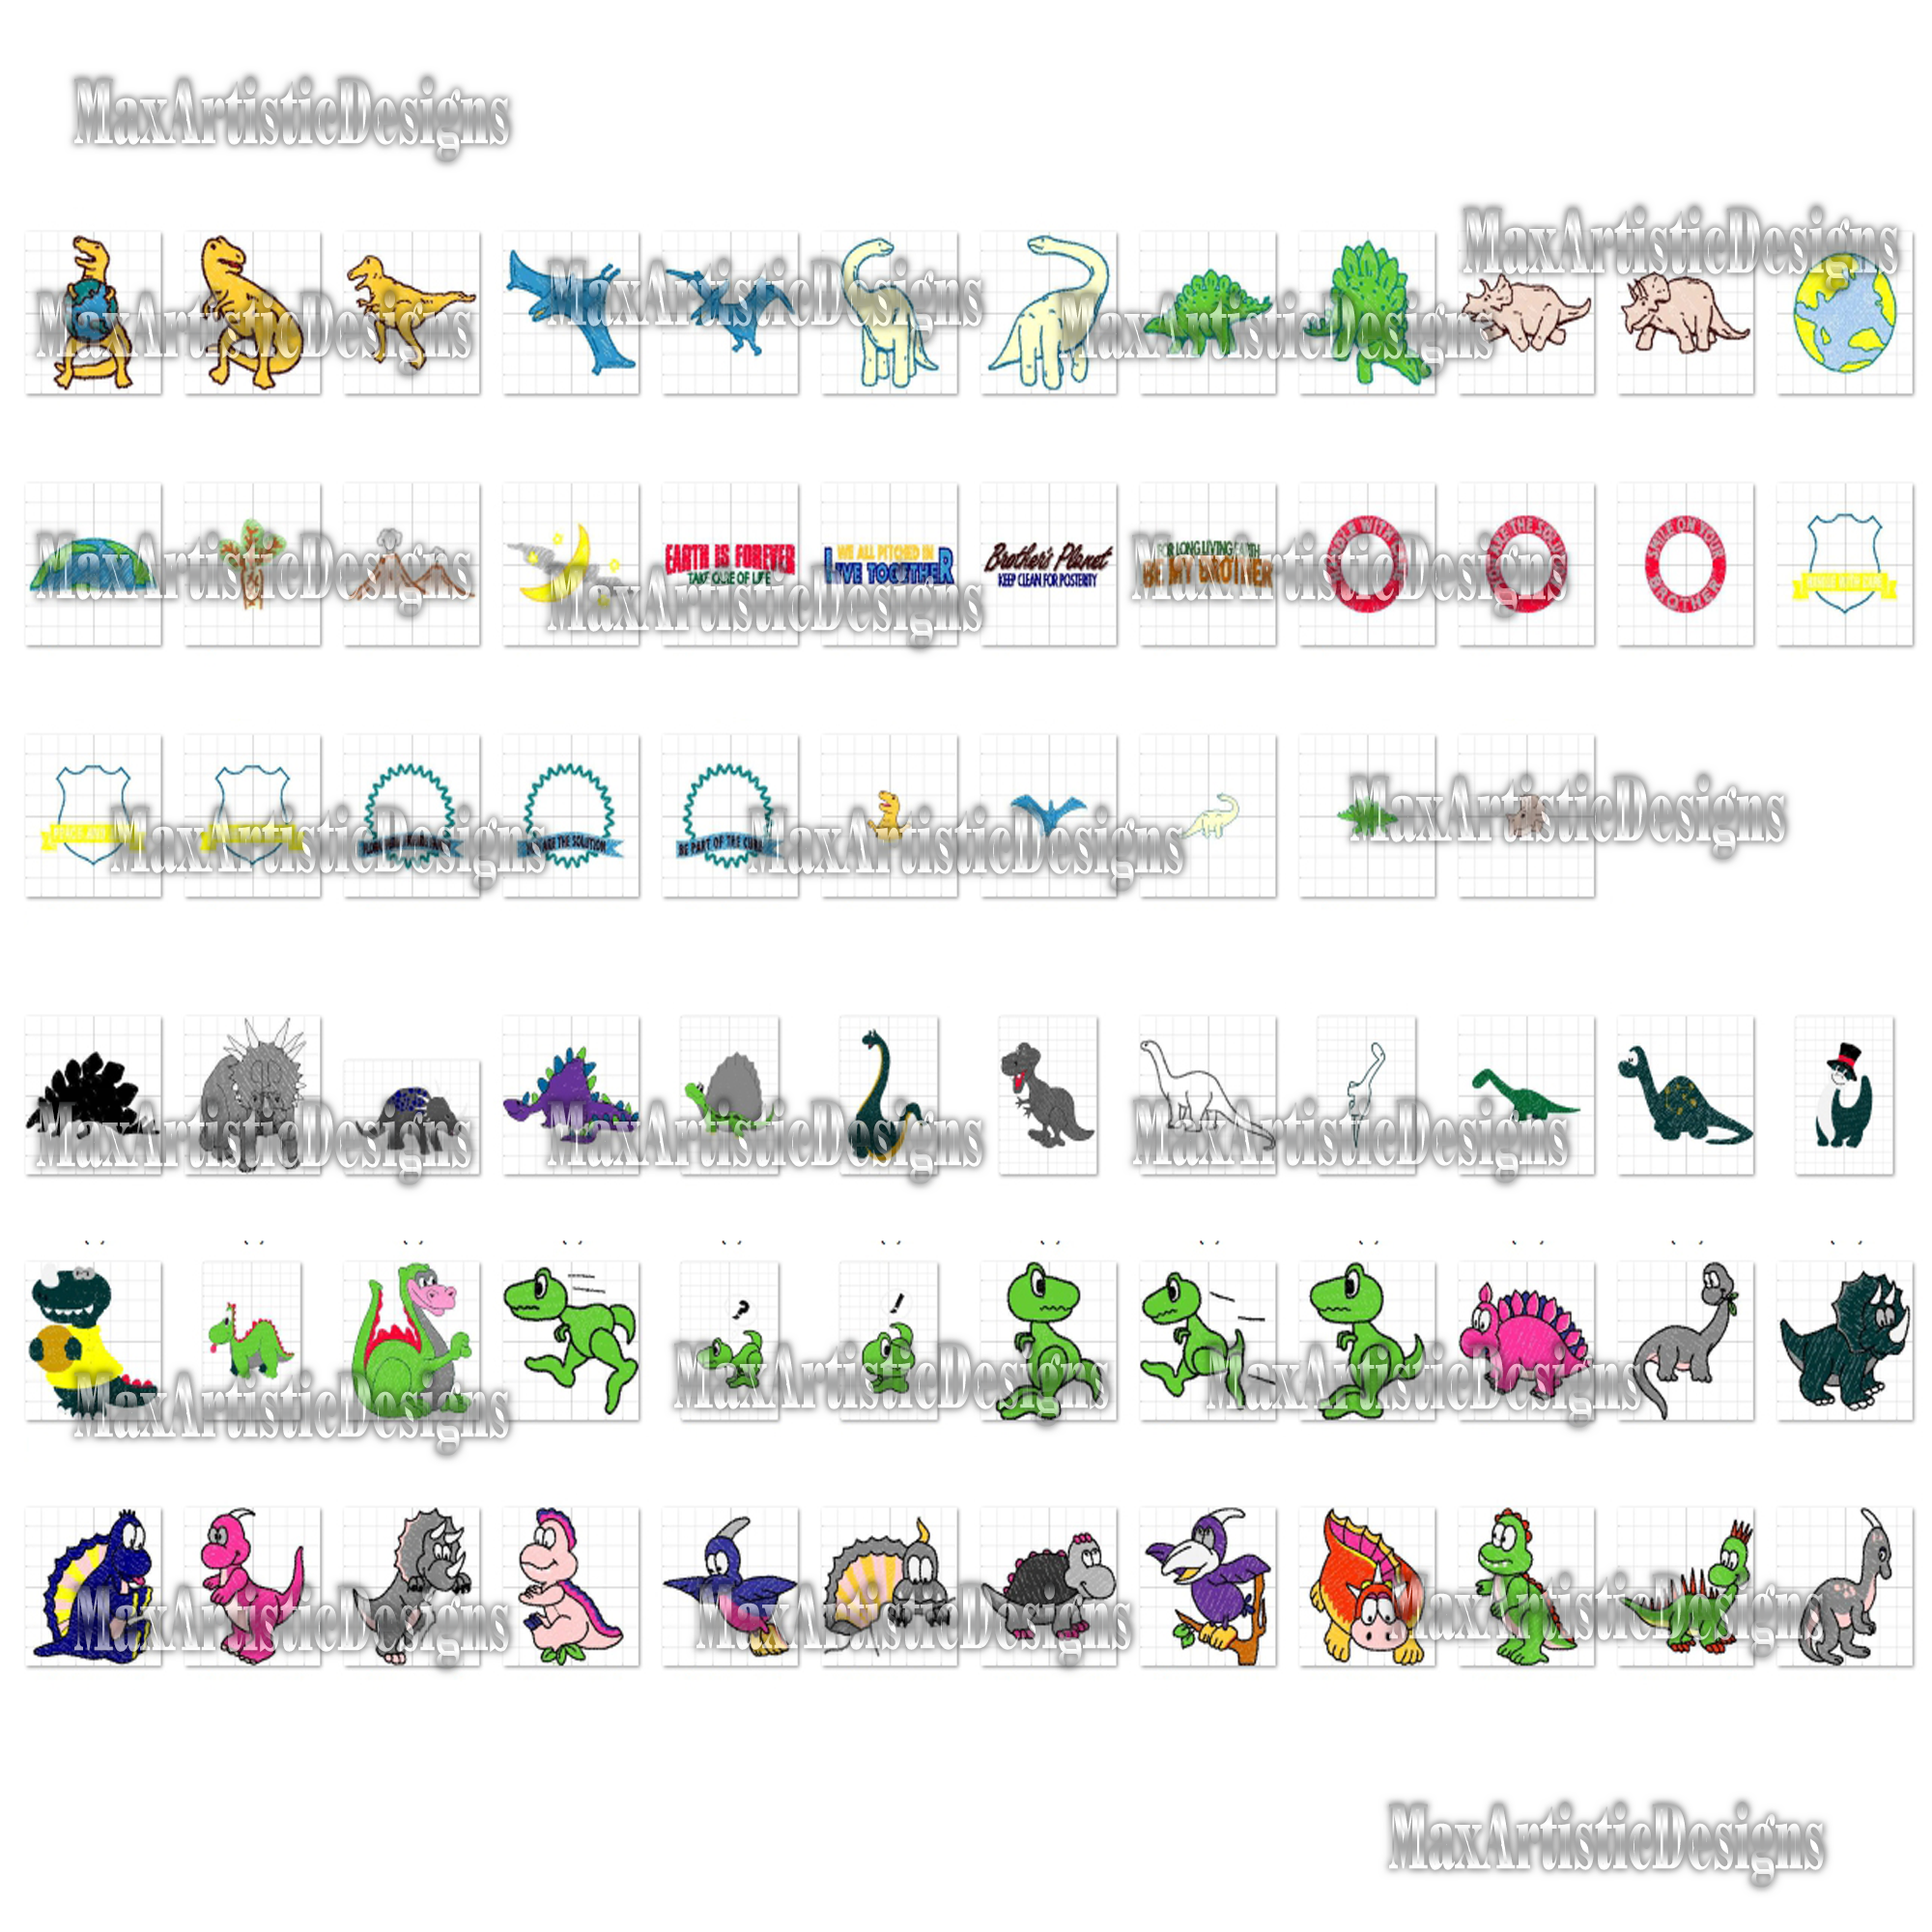 Más de 160 patrones de bordado de dinosaurios Diseños de bordados a máquina